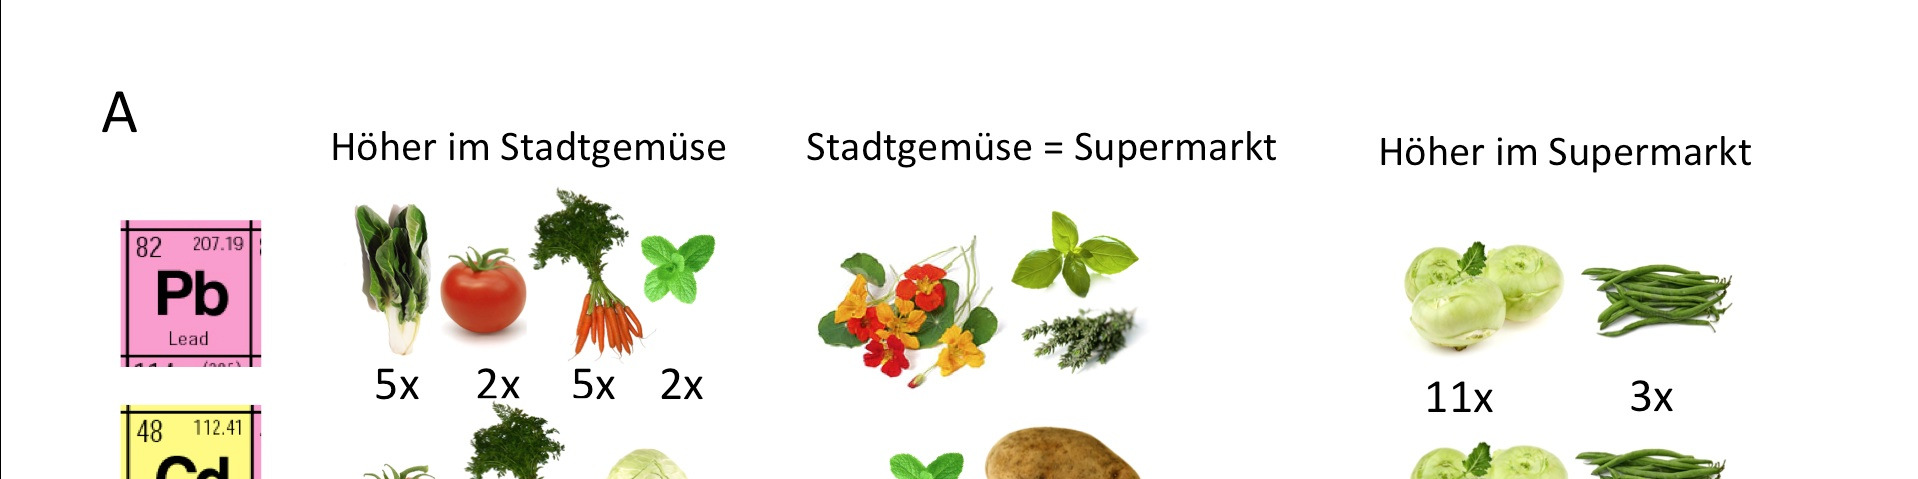 Abbildung 3: Mittlere Blei- und Cadmiumkonzentrationen in der Berliner Innenstadt geernteten Gemüse- und Obstarten im Vergleich zu Supermarktprodukten (Daten: Säumel et al.